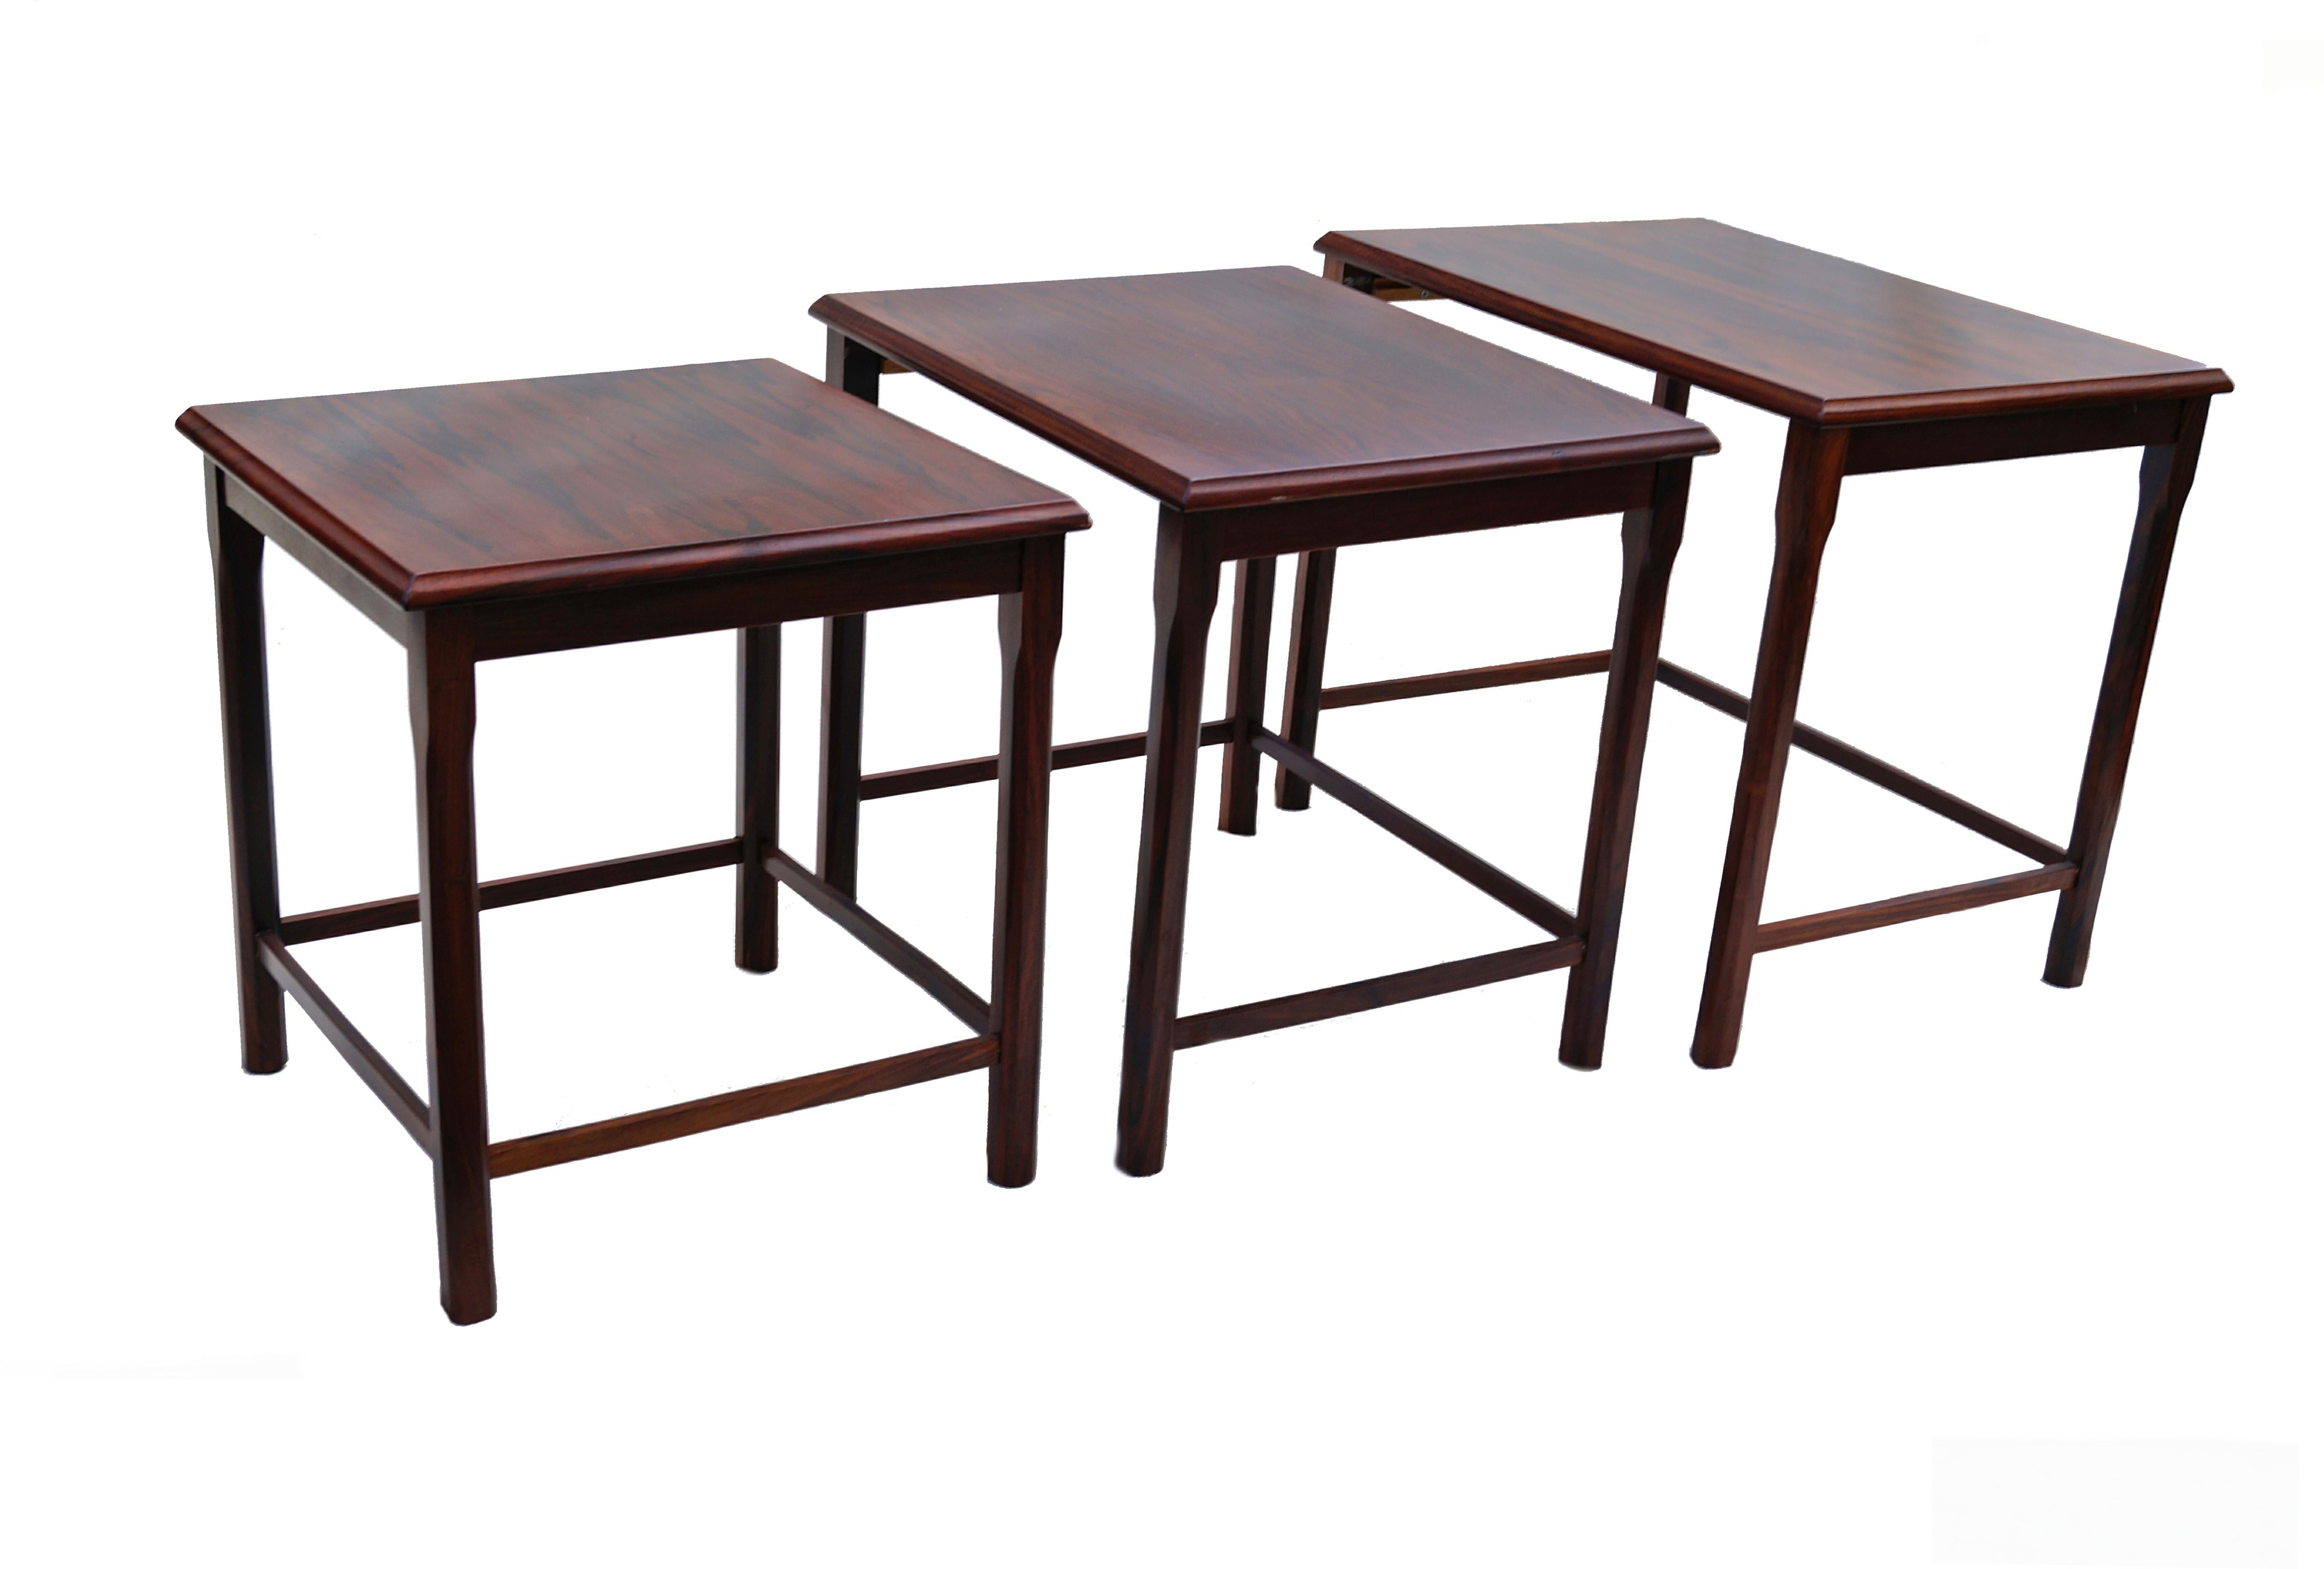 Tables gigognes empilables en bois de rose danois par EW Bach pour Mobelfabriken Toften.
La plus grande mesure : 18 3/4